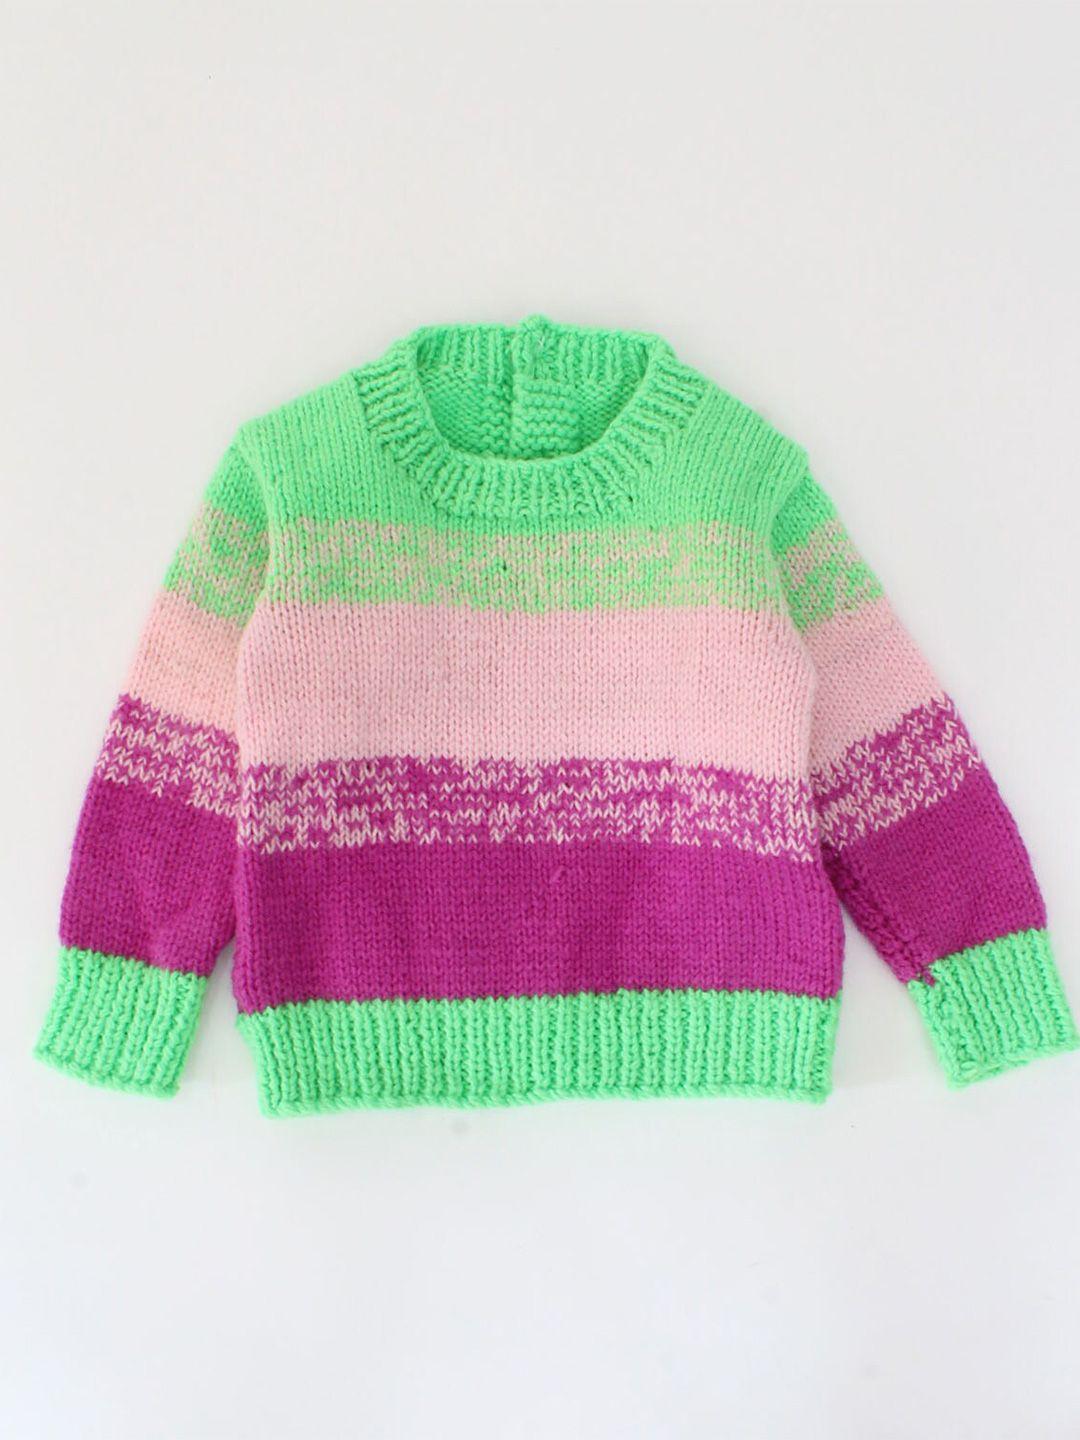 woonie unisex kids green & pink striped pullover